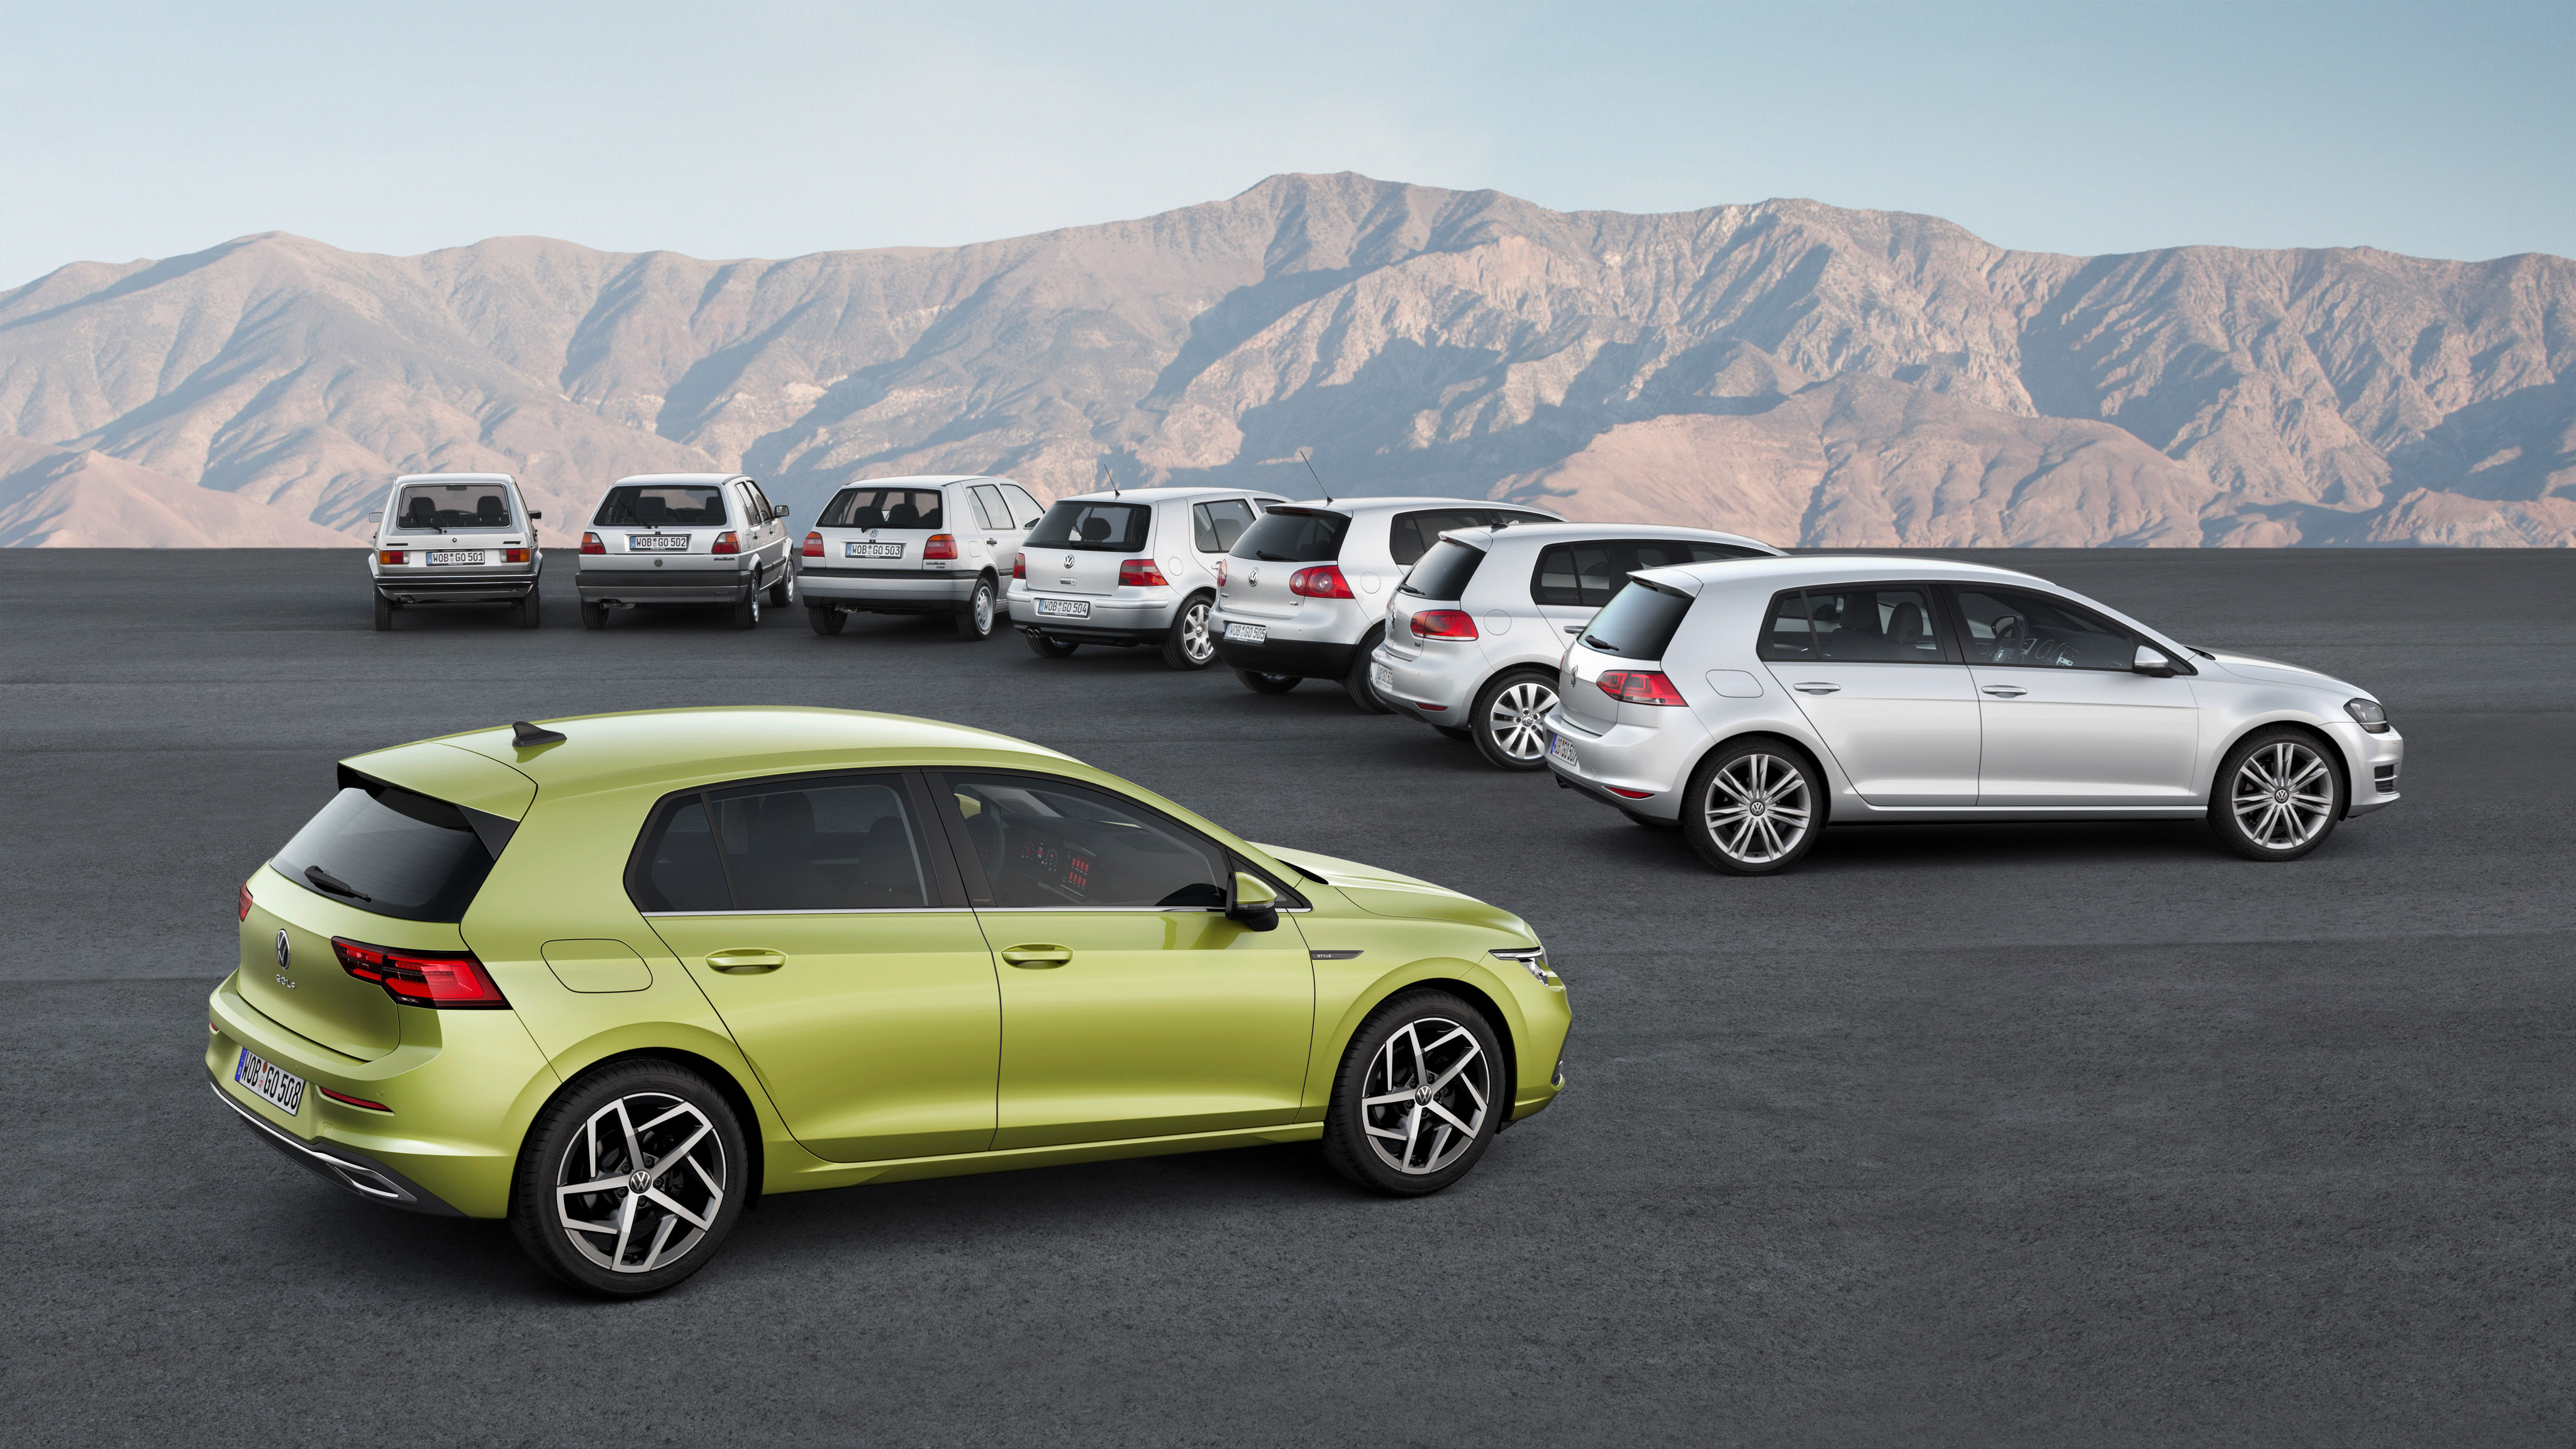 Новое поколение 8. VW Golf 8. Фольксваген гольф 8 поколения. Volkswagen Golf универсал 8 поколения. VW Cross Golf 2020.